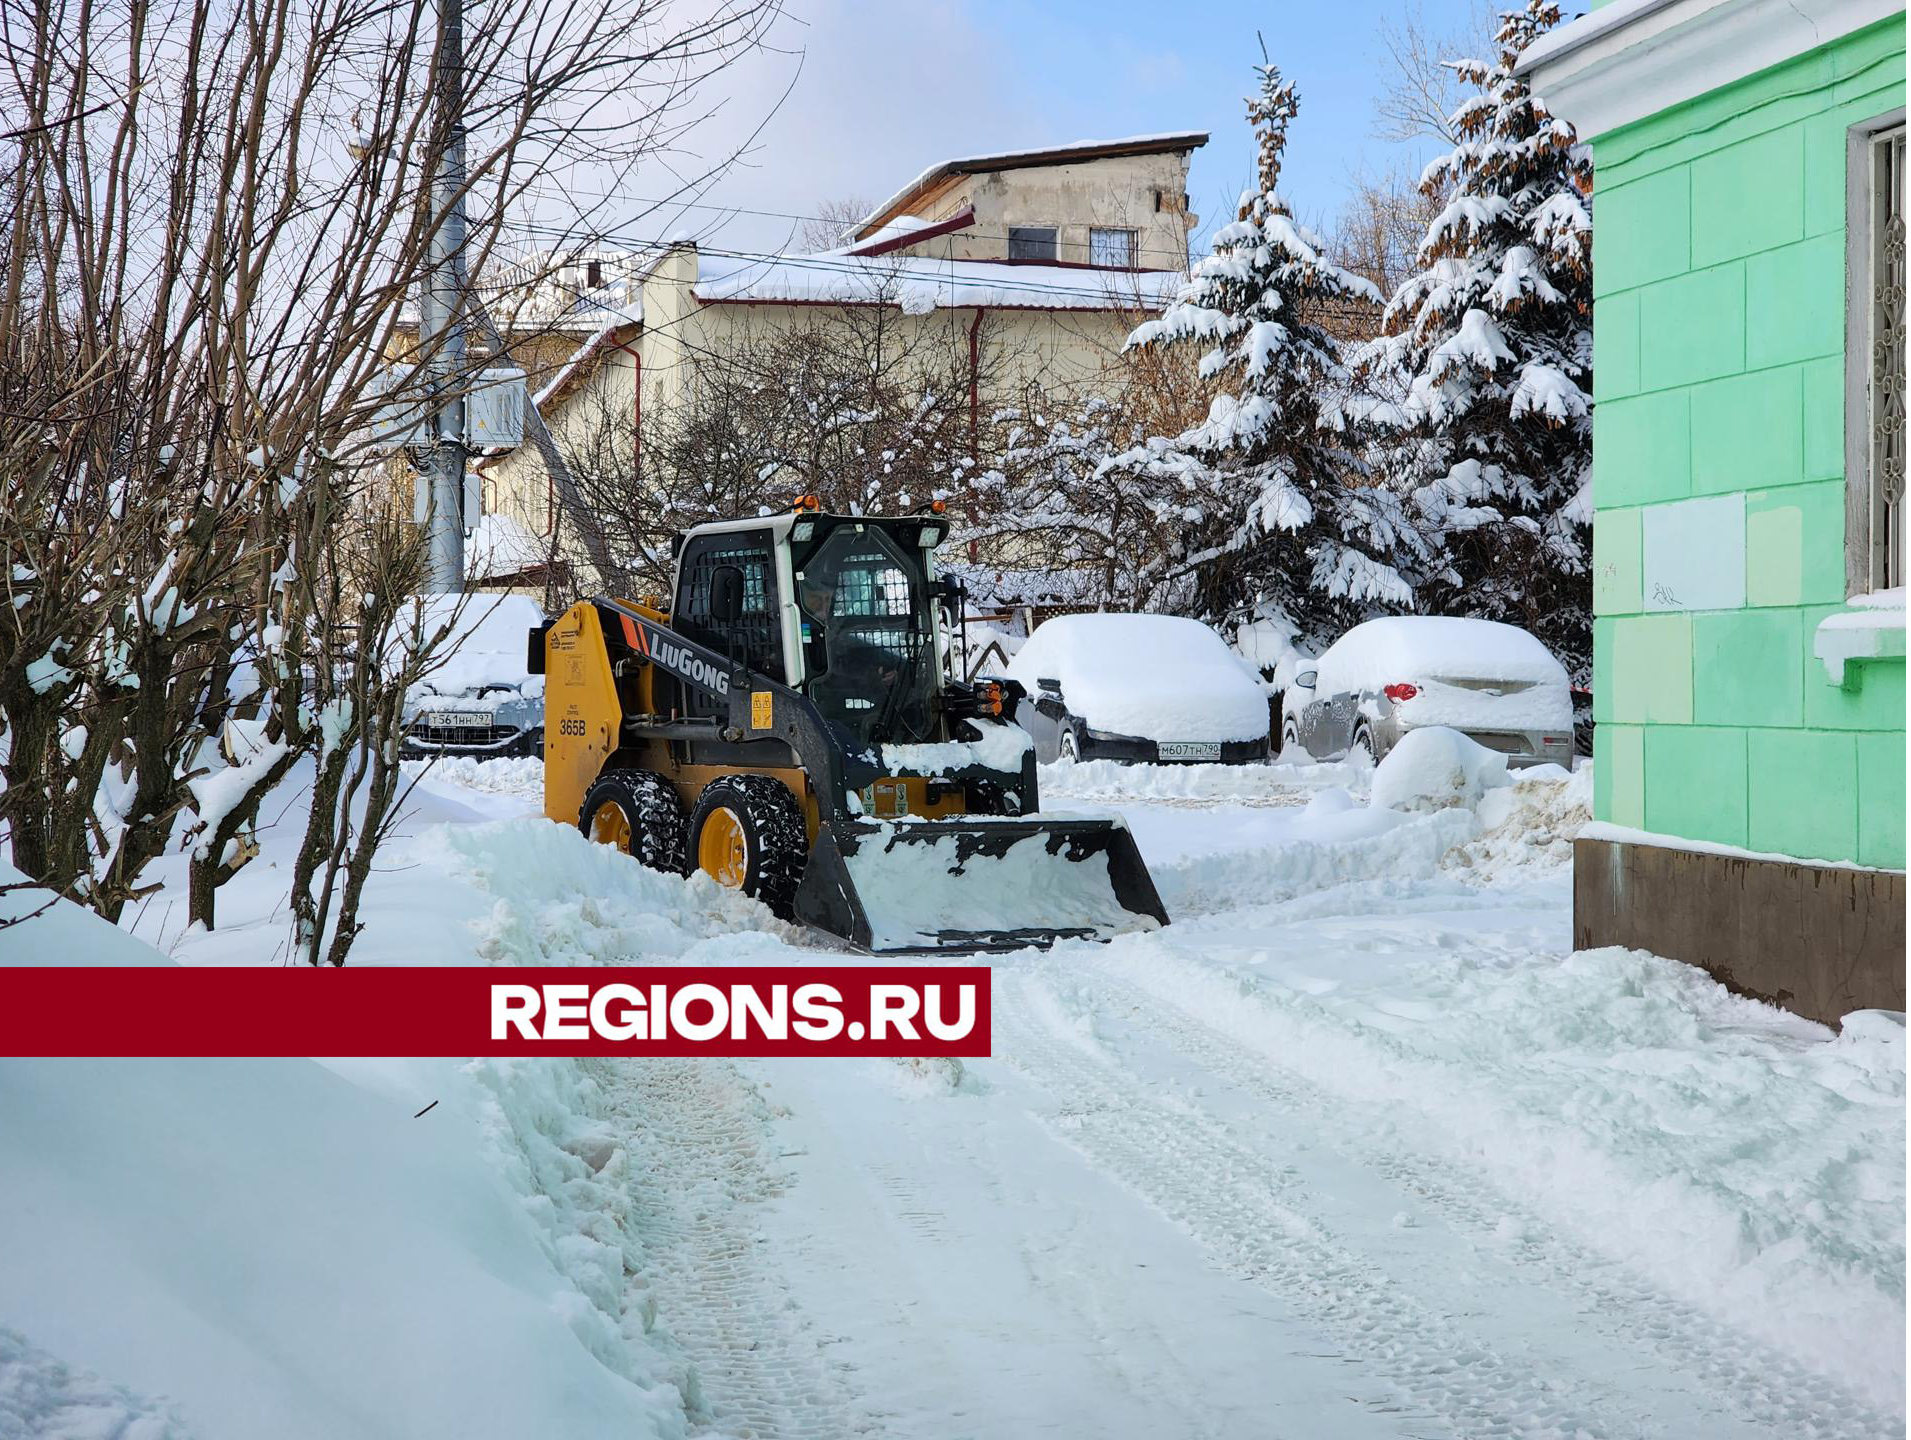 Коммунальные службы города продолжают устранять последствия снегопада «Ольга»